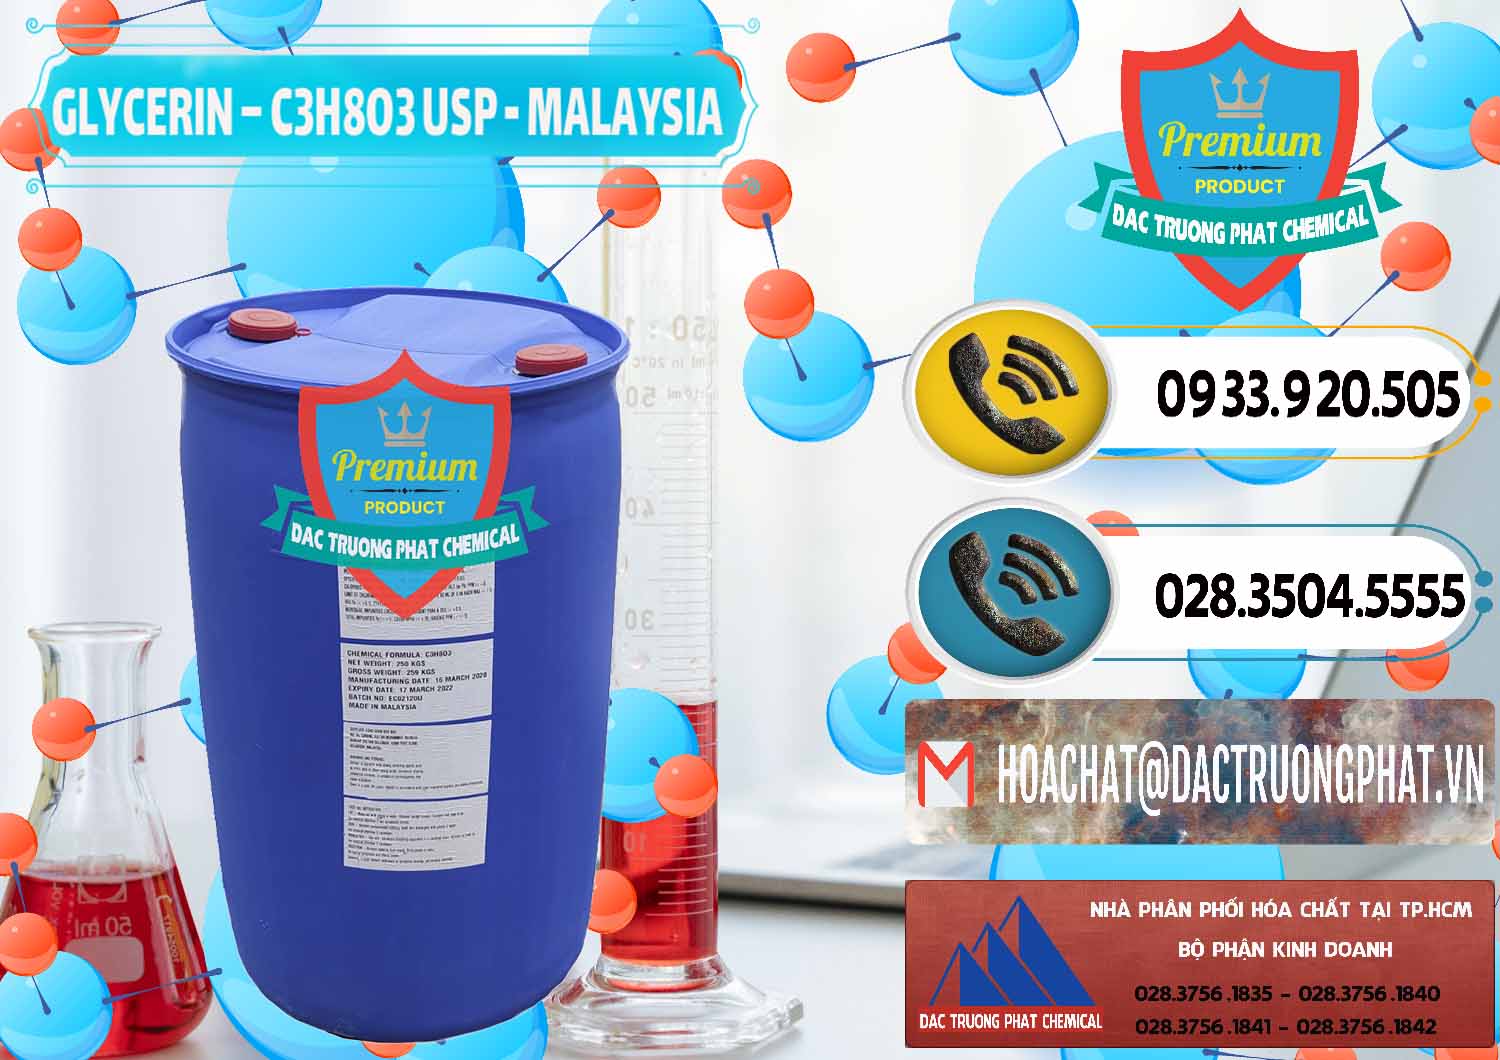 Chuyên cung cấp ( bán ) Glycerin – C3H8O3 USP Malaysia - 0233 - Cty chuyên phân phối và kinh doanh hóa chất tại TP.HCM - hoachatdetnhuom.vn